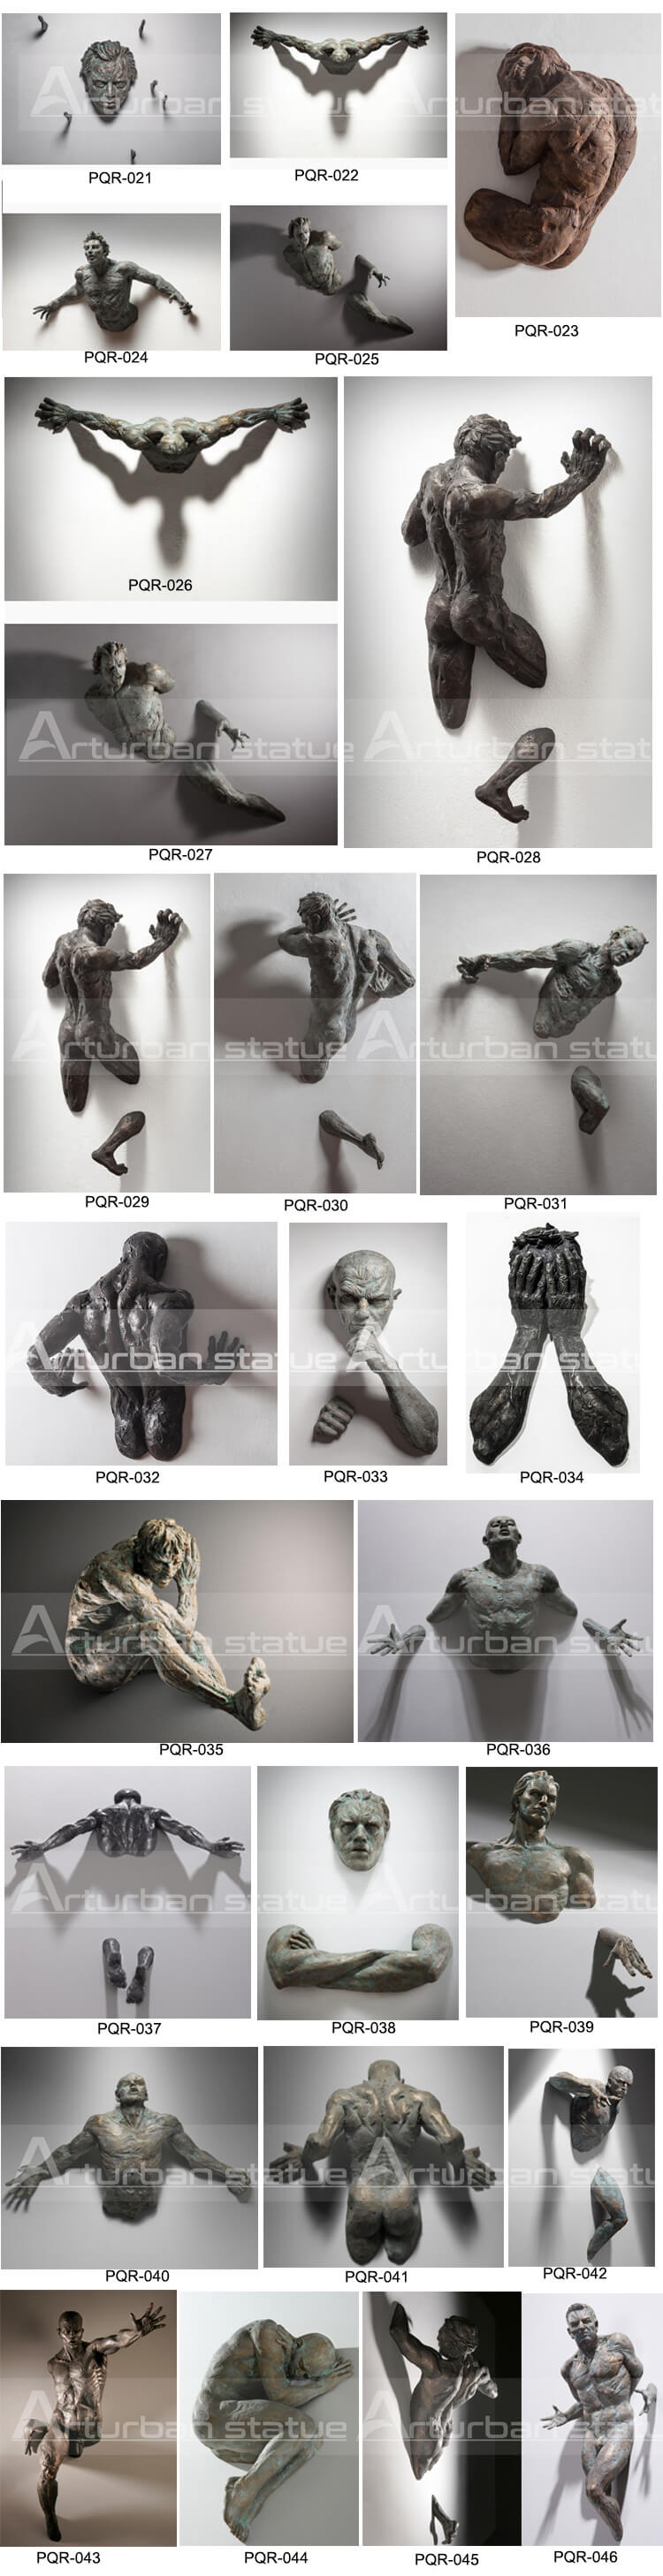 Matteo Pugliese Abstract Nude Man Sculpture